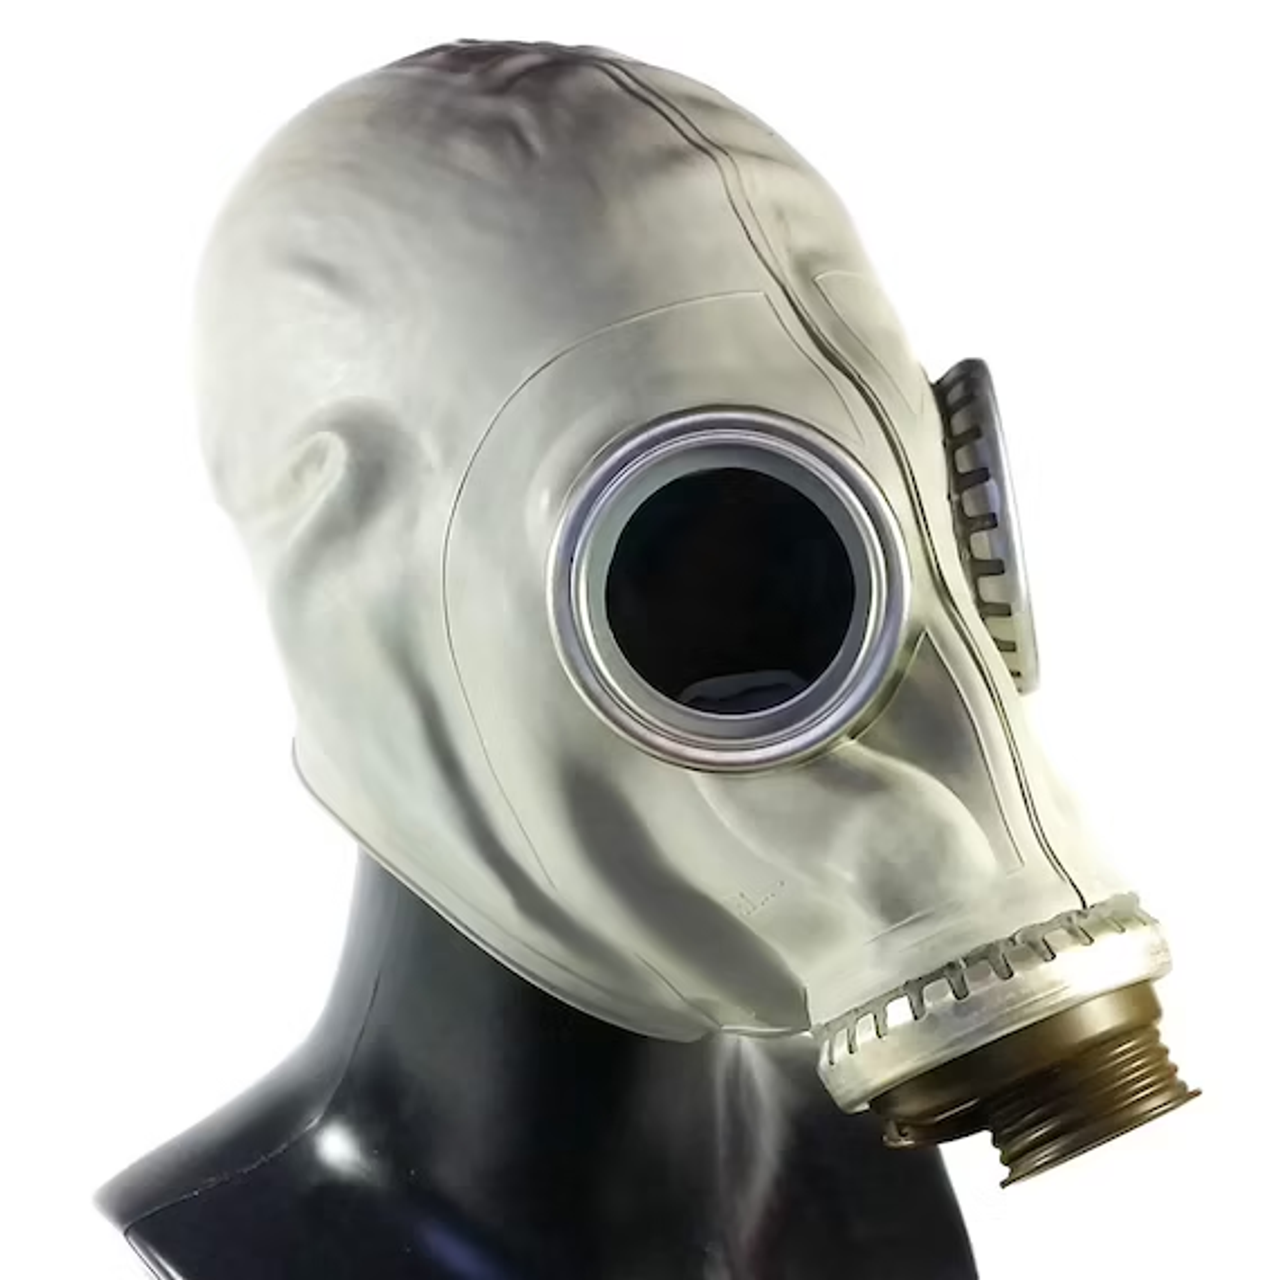 Masque à gaz - Espace fete